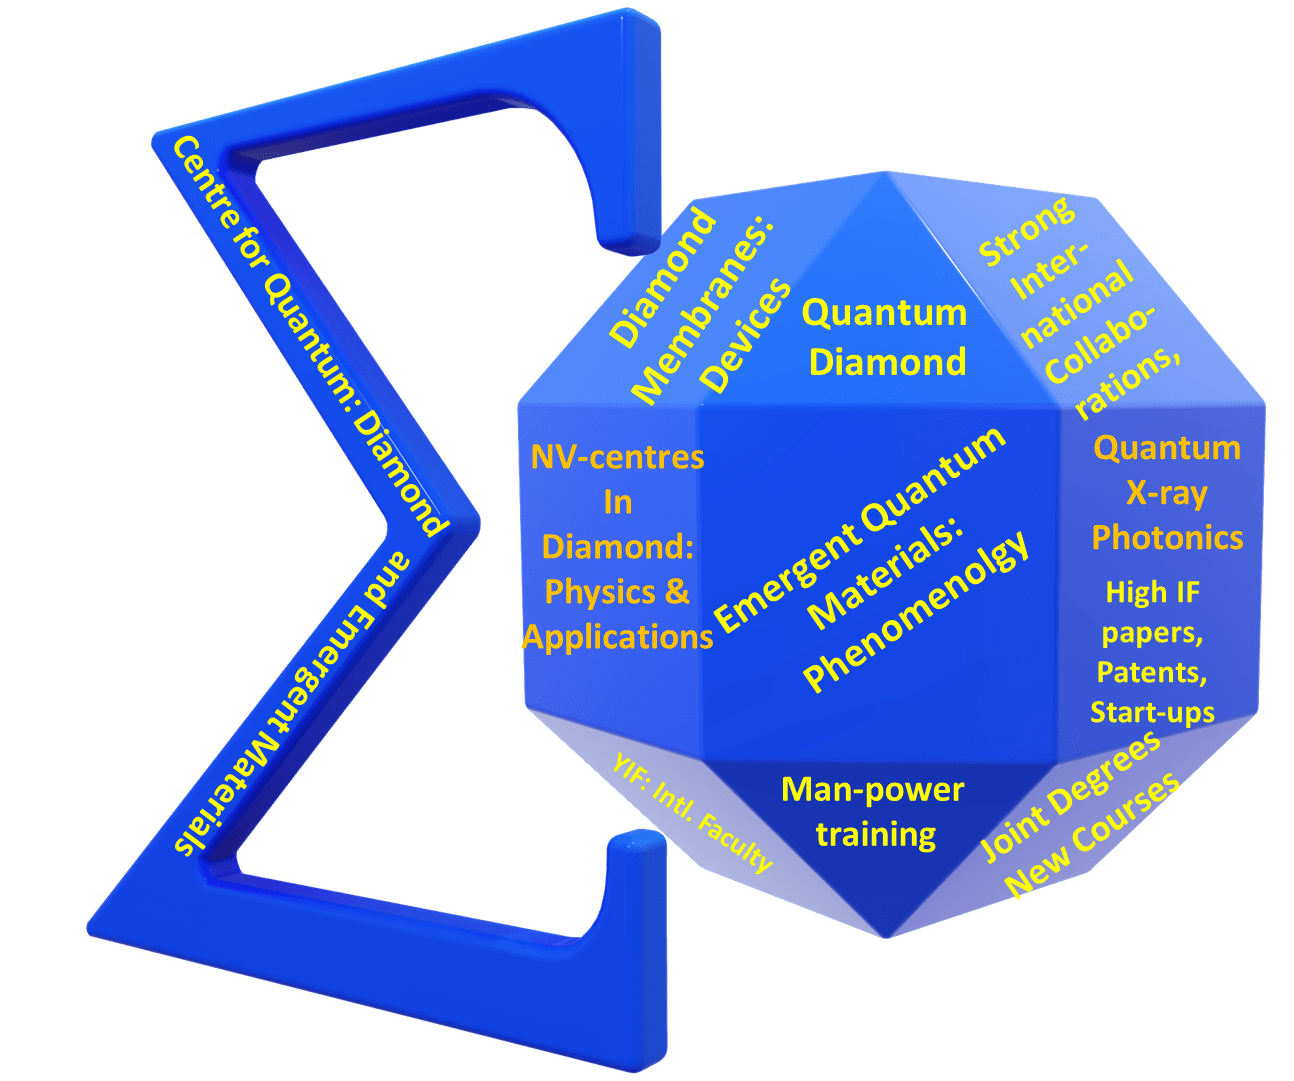 Quantum Centers in Diamond and Emergent Materials